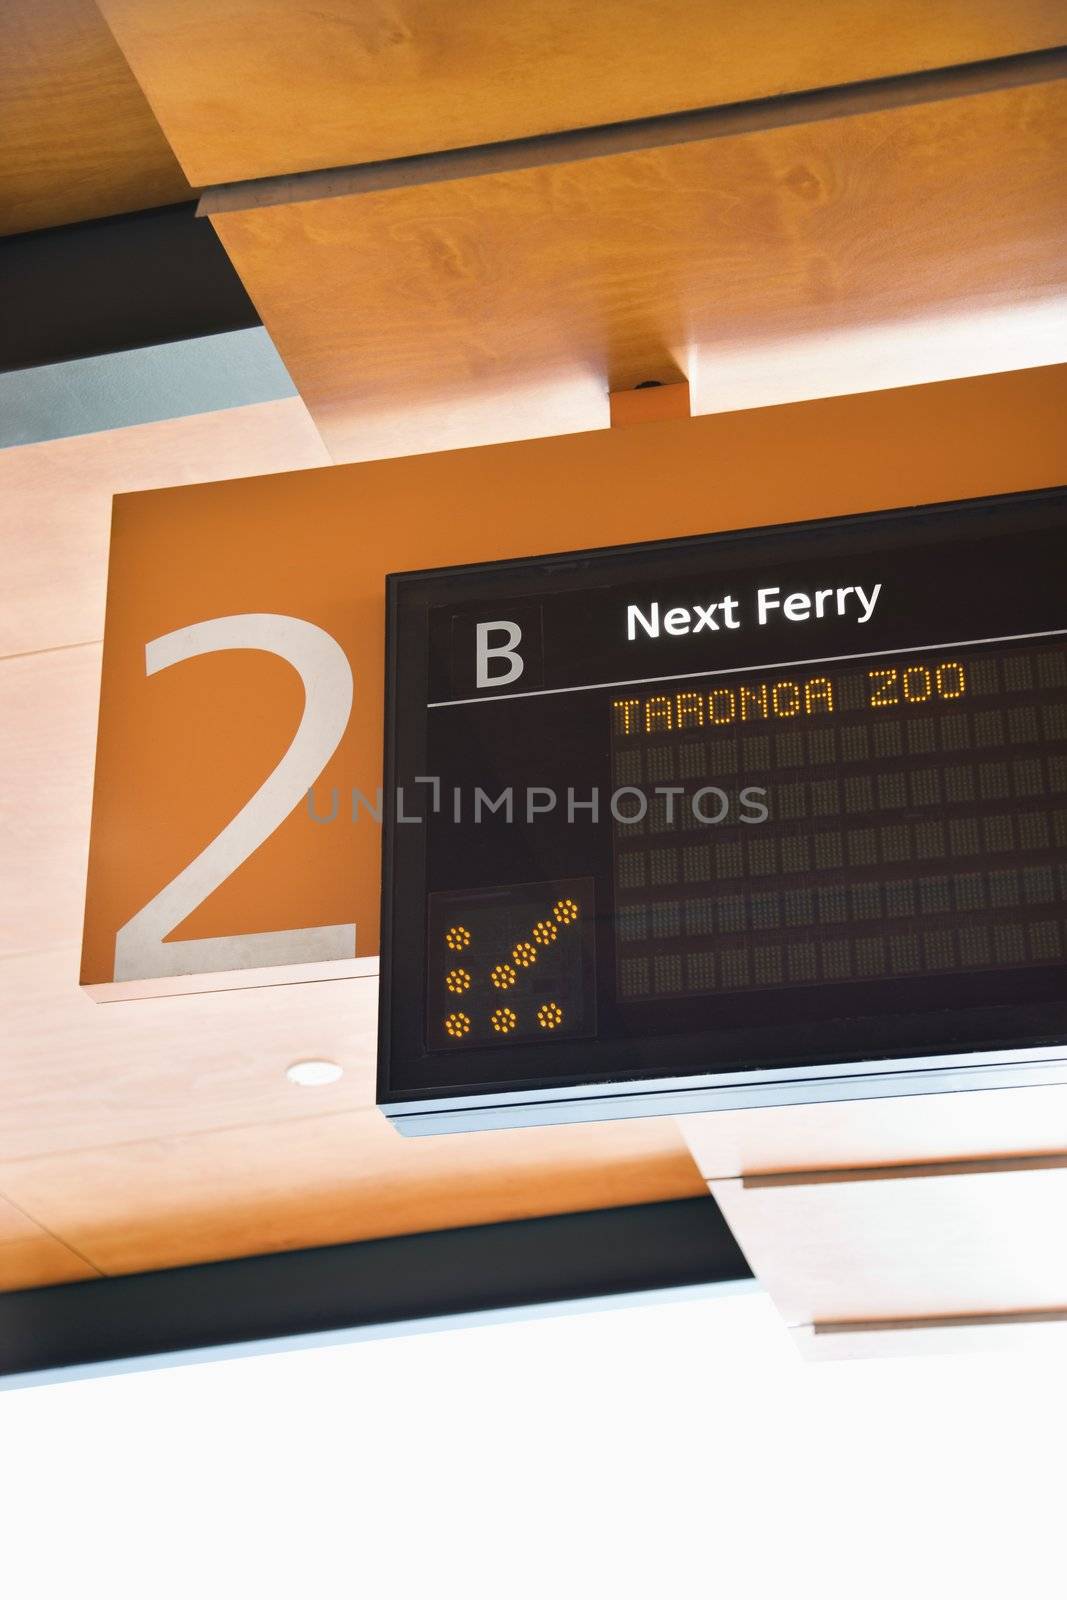 Departure board for ferryboats in Sydney, Australia.